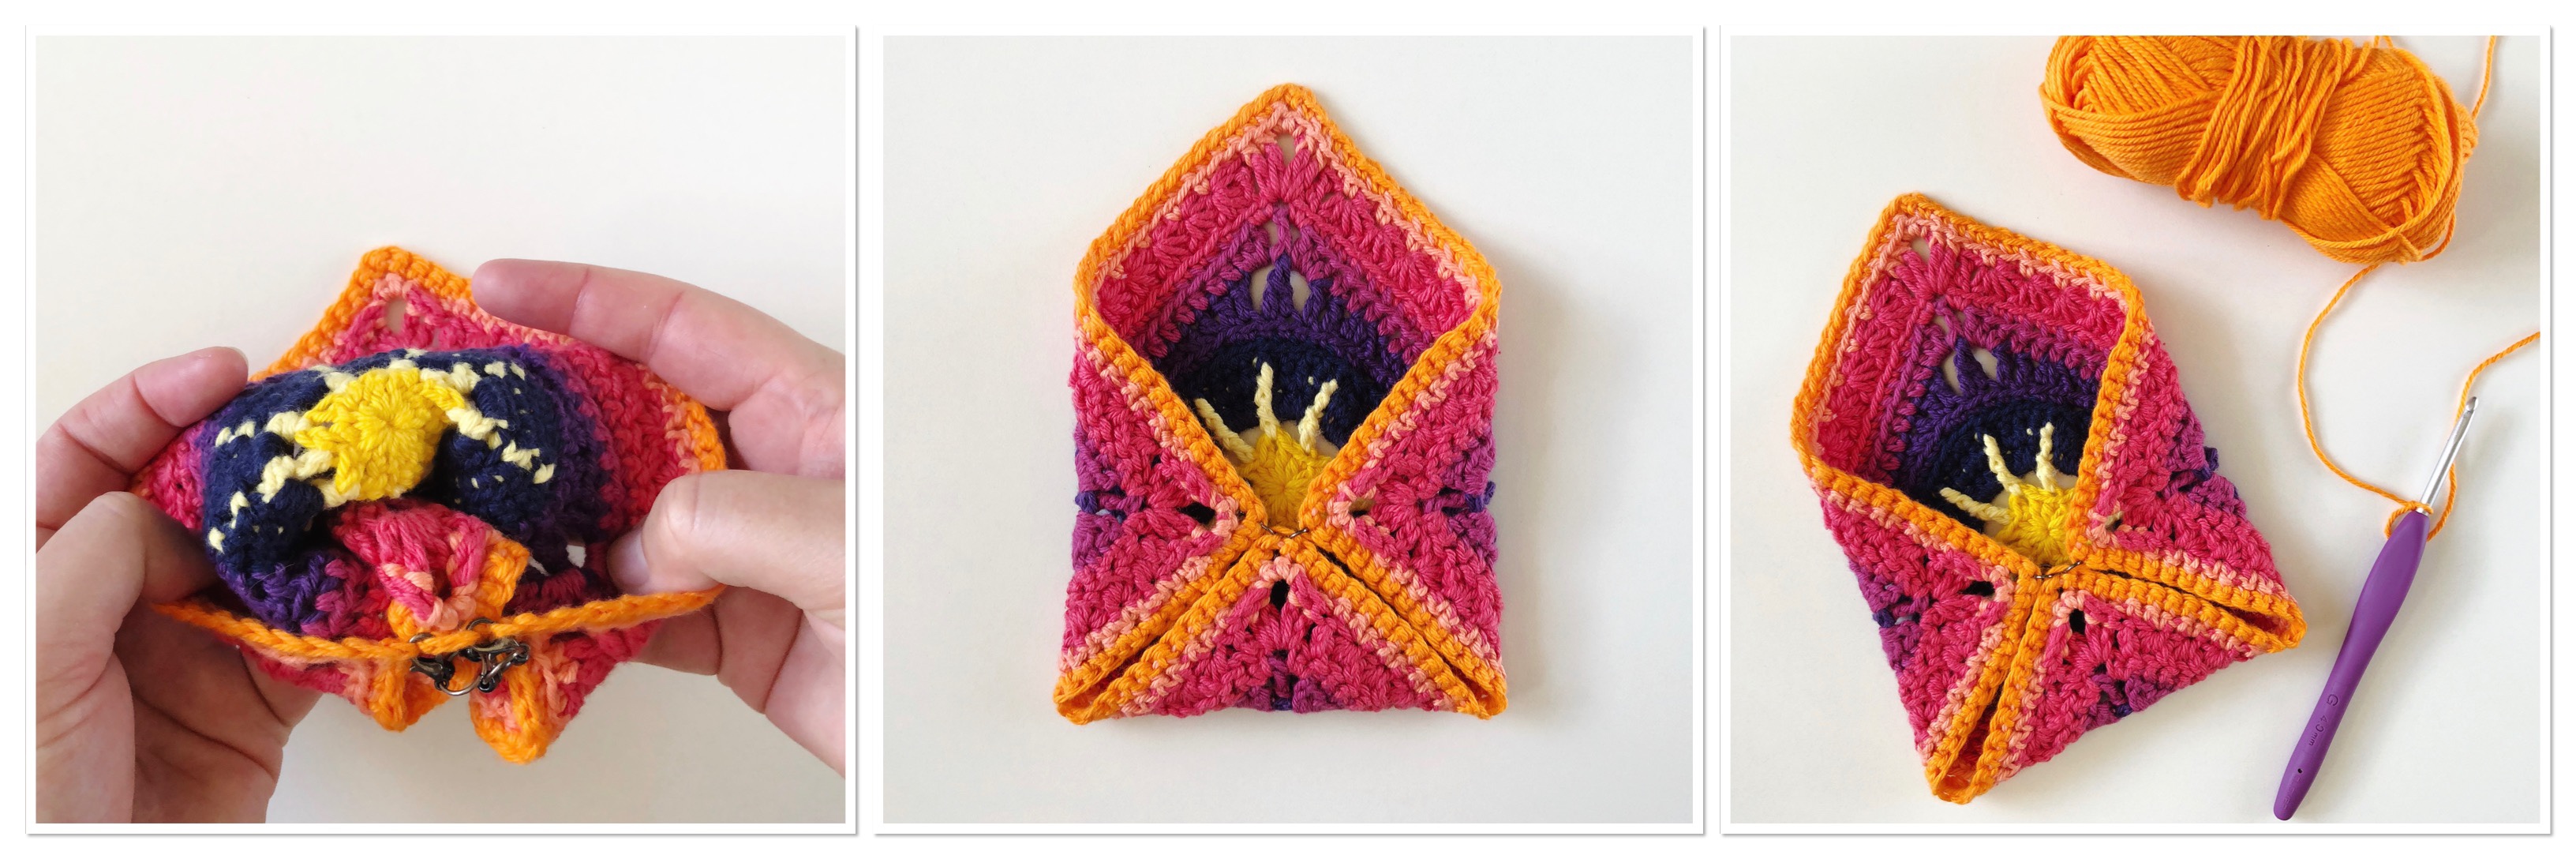 Hand-woven Daisy Women's Shoulder Bag Crochet Knitted Women Handbag –  HeyHouseCart